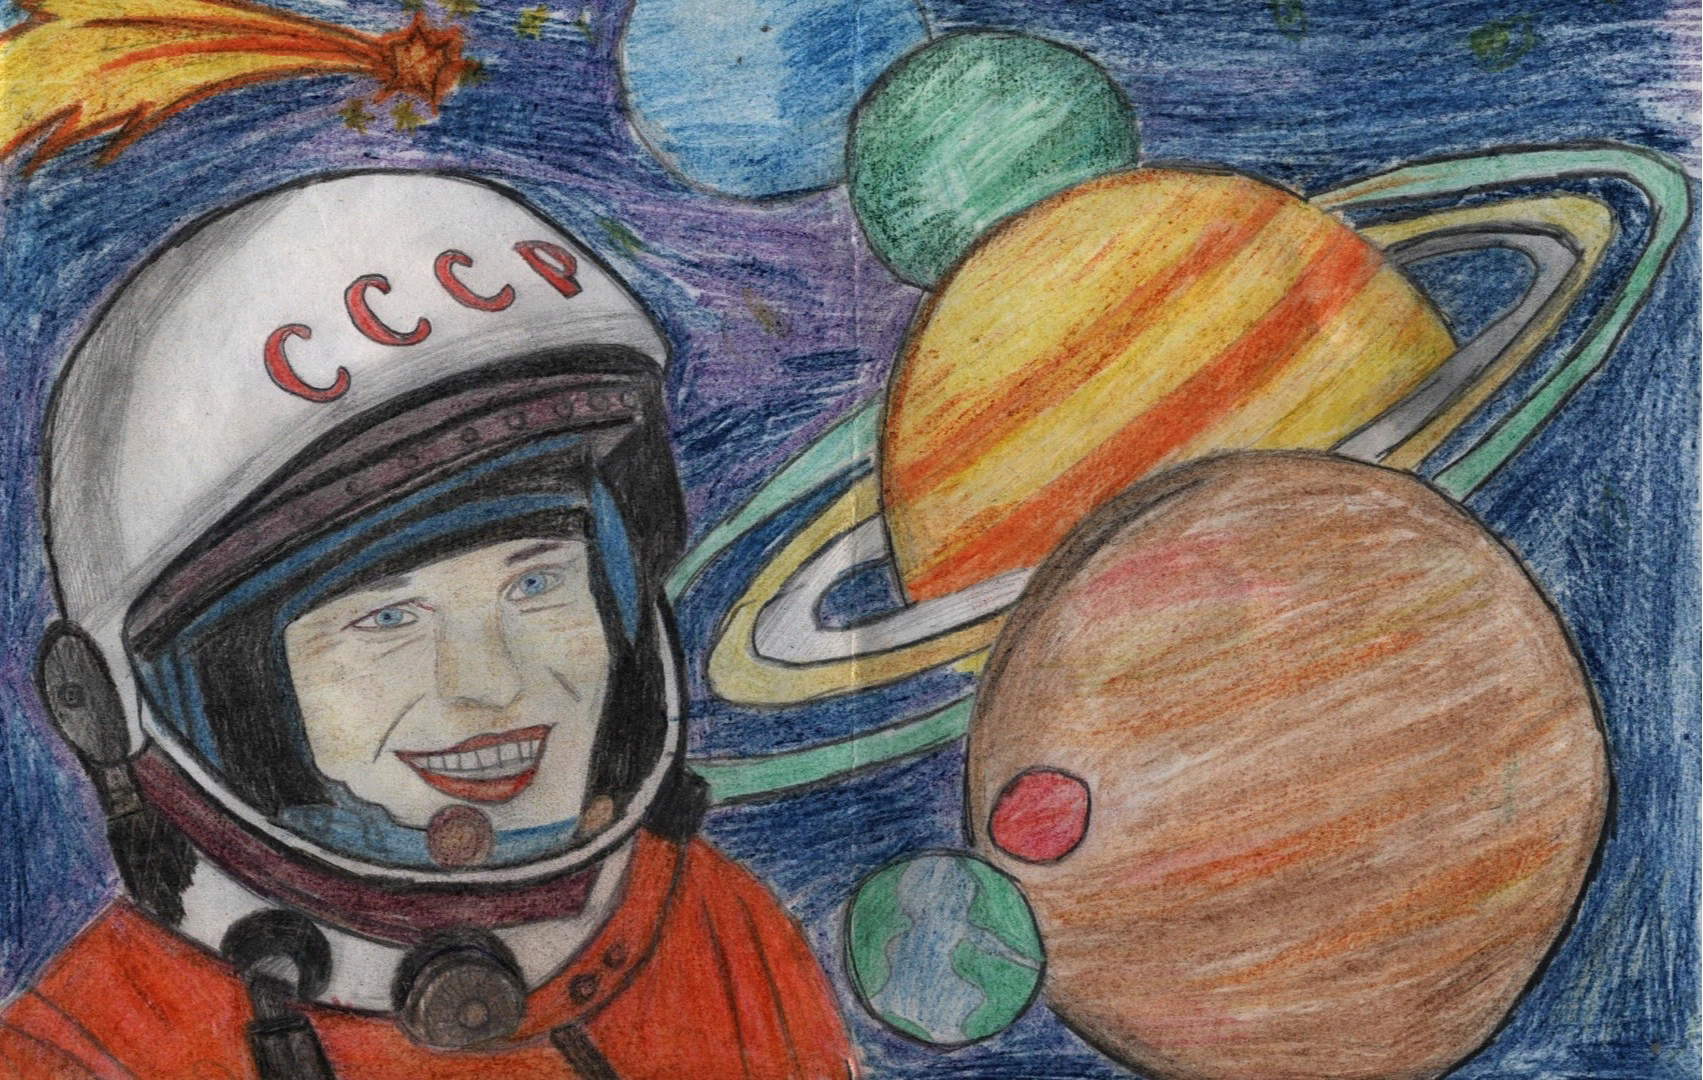 Картинки на день космонавтики для срисовки